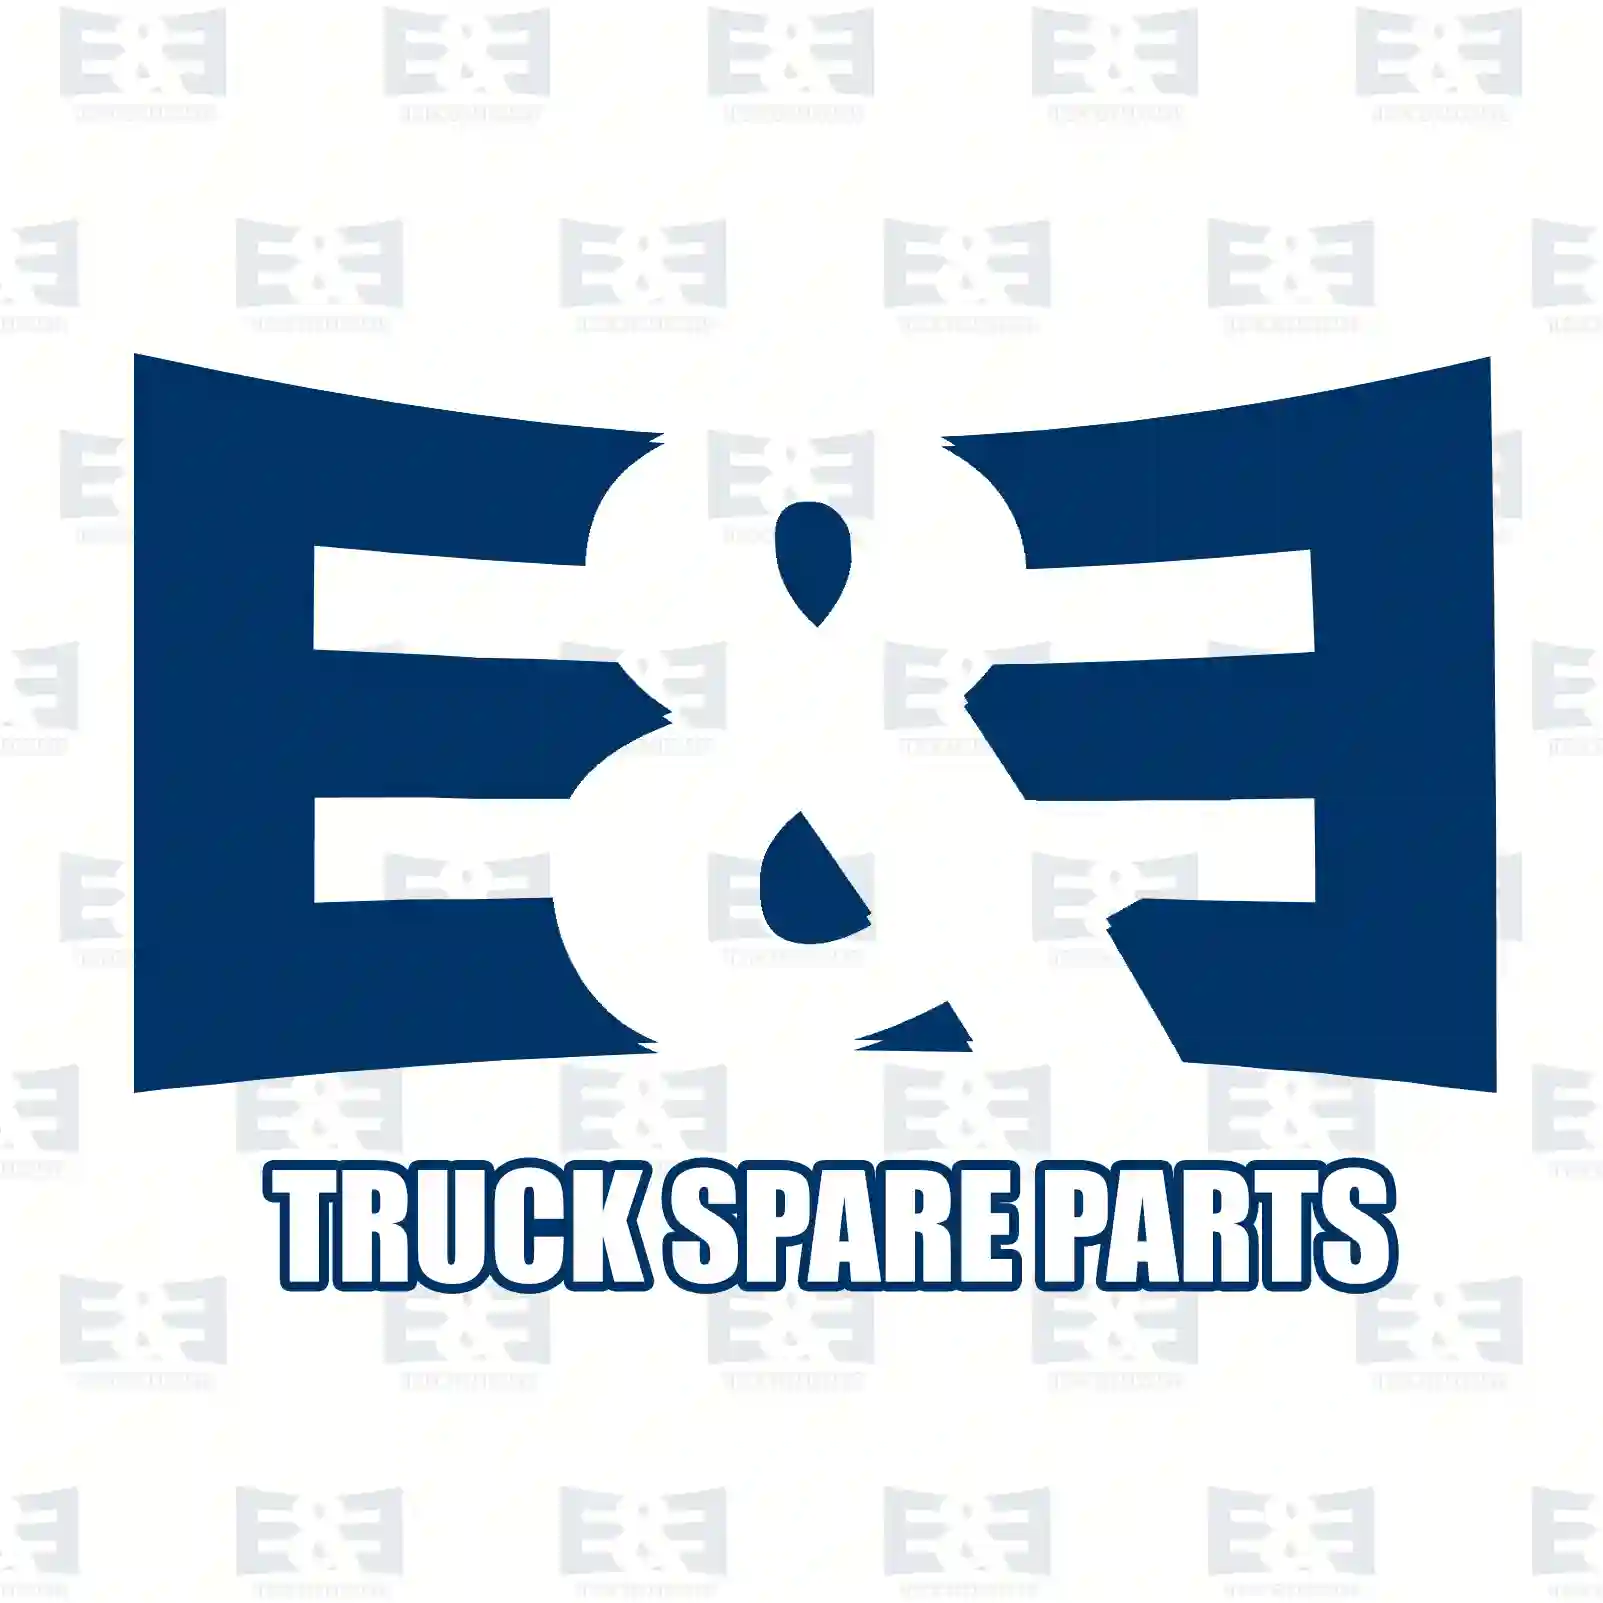 Main bearing kit, 2E2208542, 3660300340S, 3660301040S, ZG02561-0008 ||  2E2208542 E&E Truck Spare Parts | Truck Spare Parts, Auotomotive Spare Parts Main bearing kit, 2E2208542, 3660300340S, 3660301040S, ZG02561-0008 ||  2E2208542 E&E Truck Spare Parts | Truck Spare Parts, Auotomotive Spare Parts